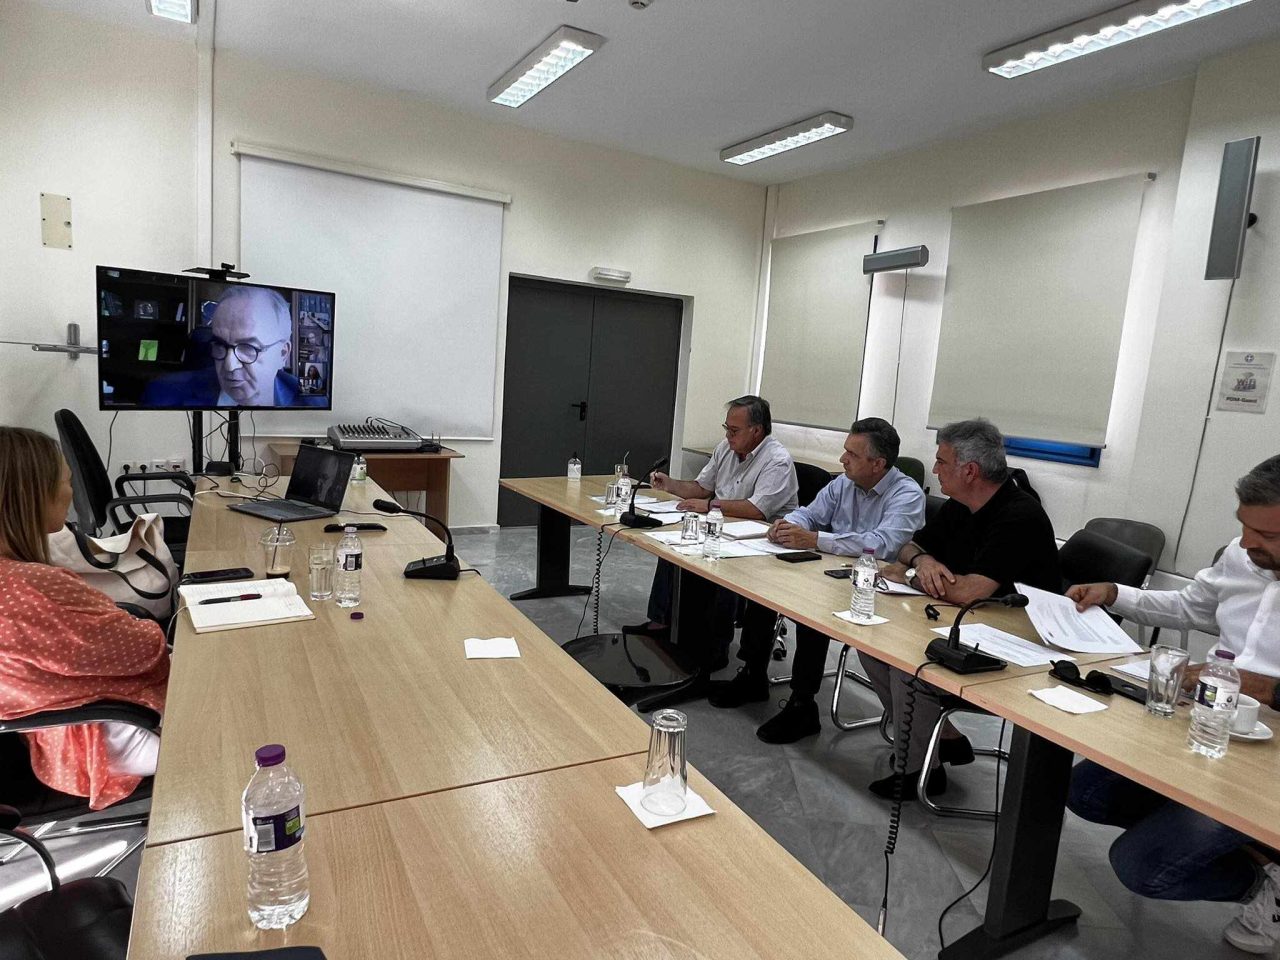 Σύσκεψη στην Κοζάνη για τα μέτρα στήριξης της γουνοποιίας